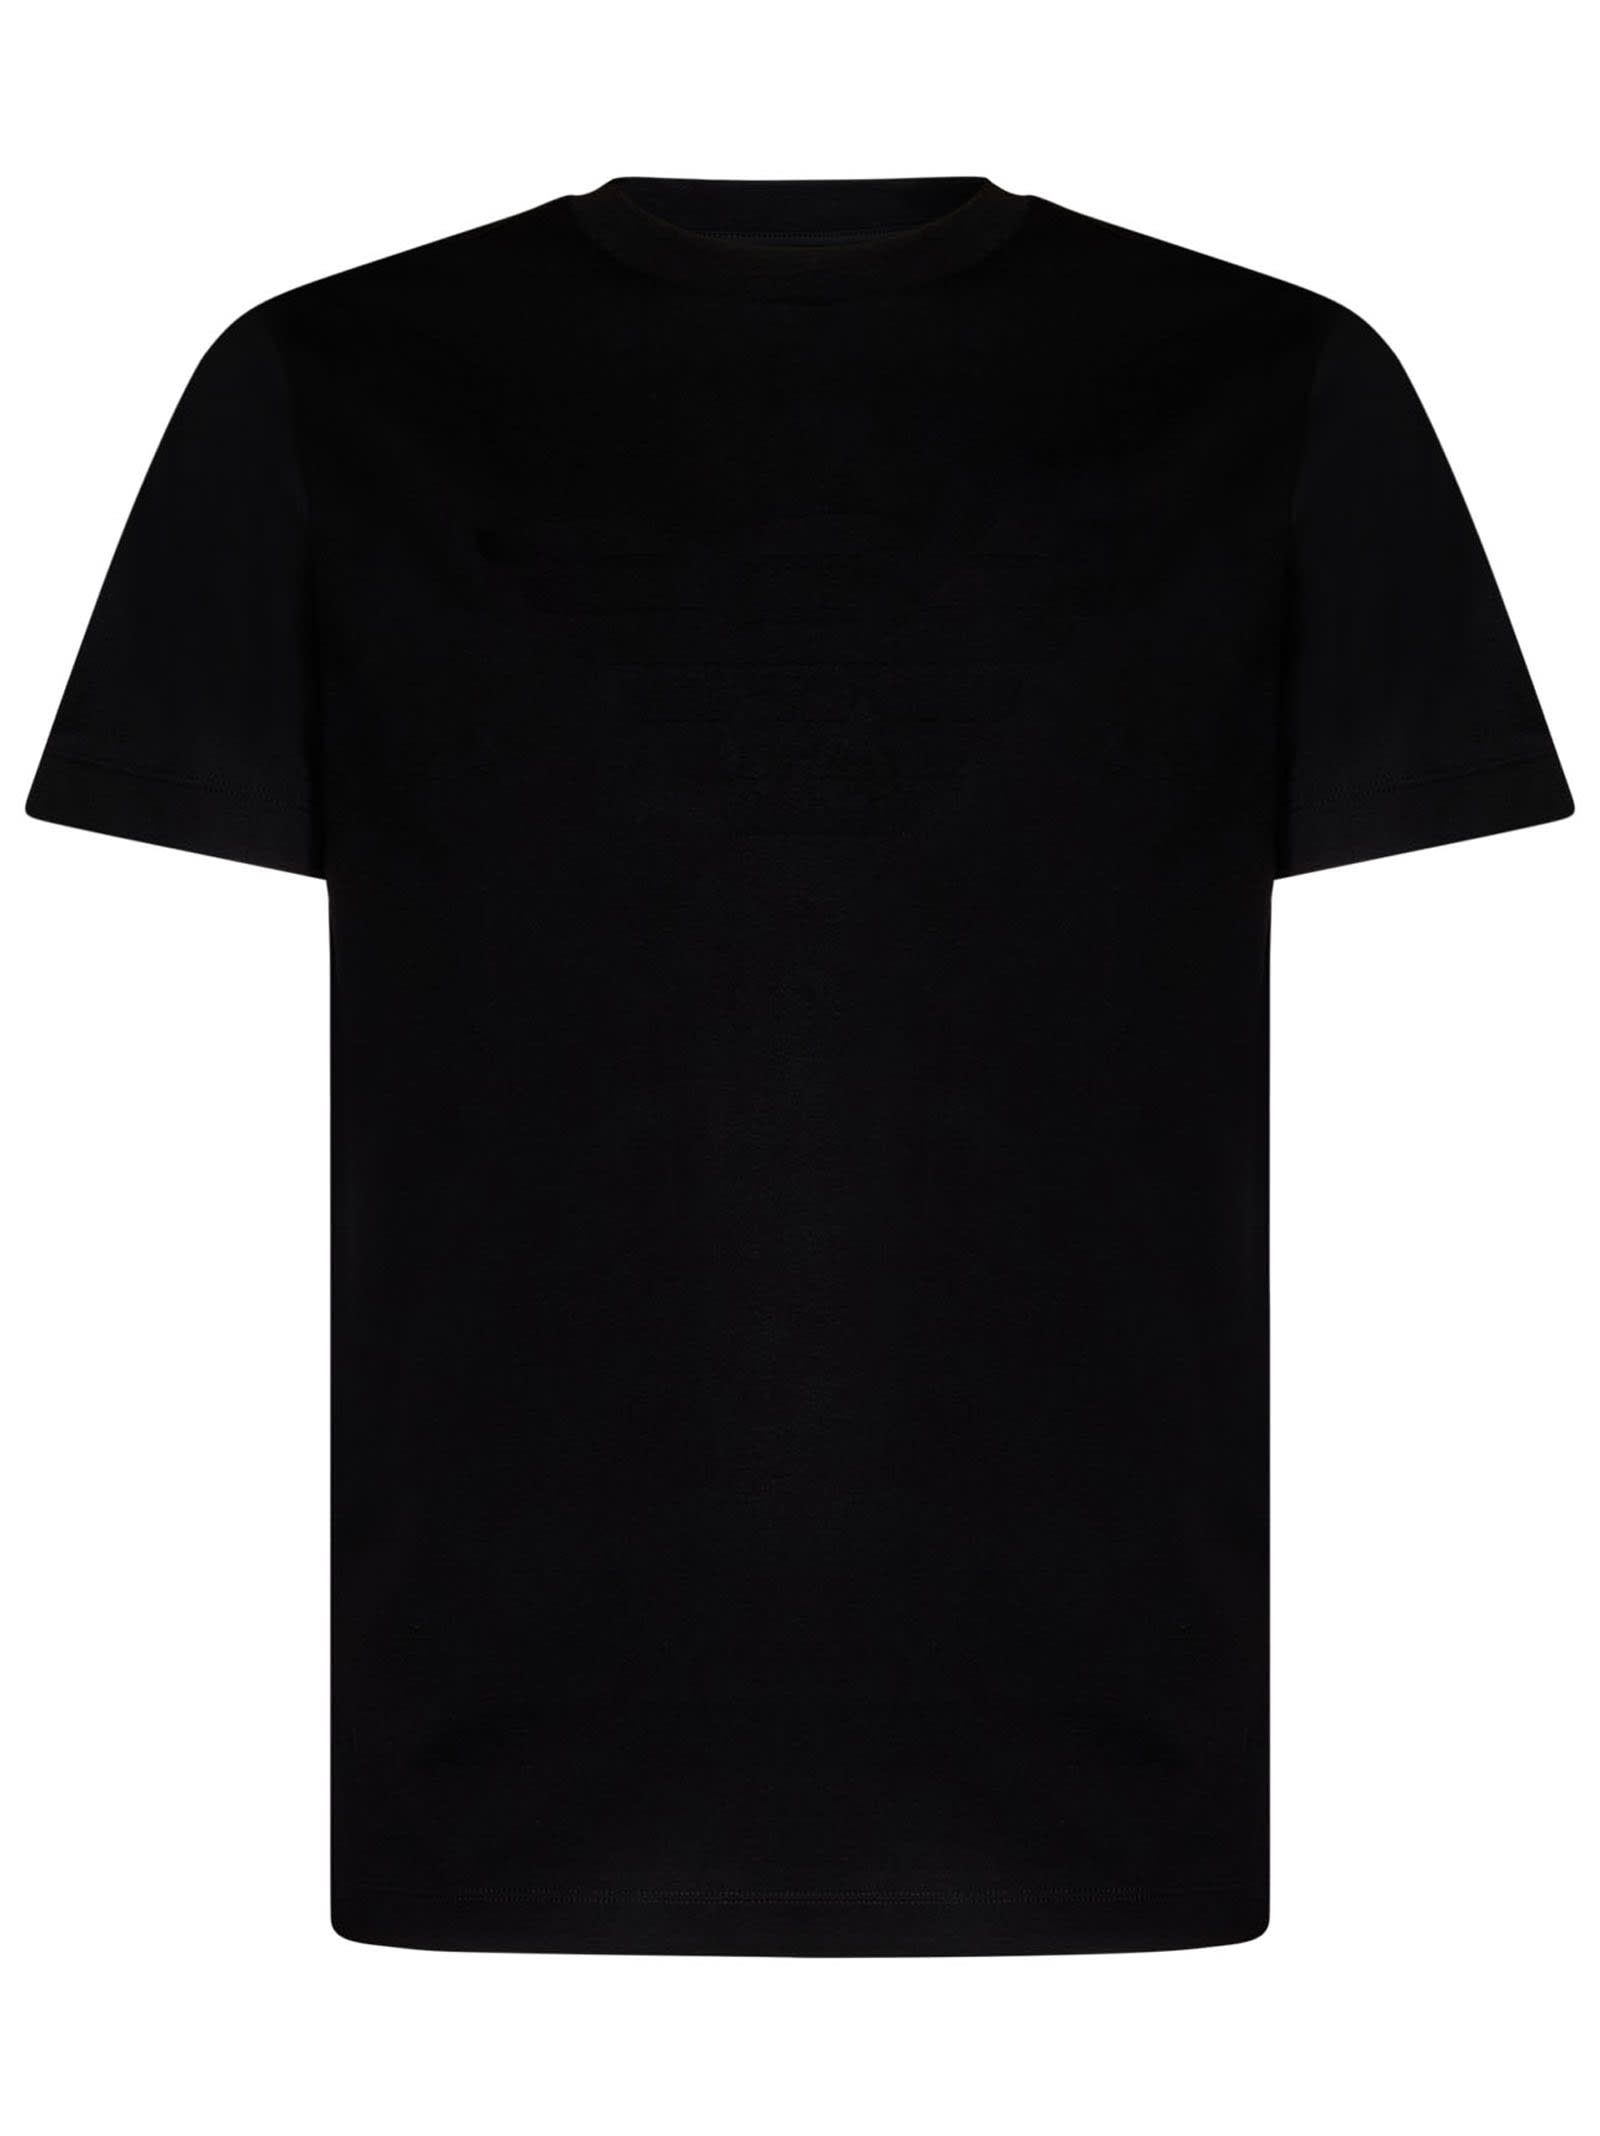 Giorgio Armani T-shirt  In Black